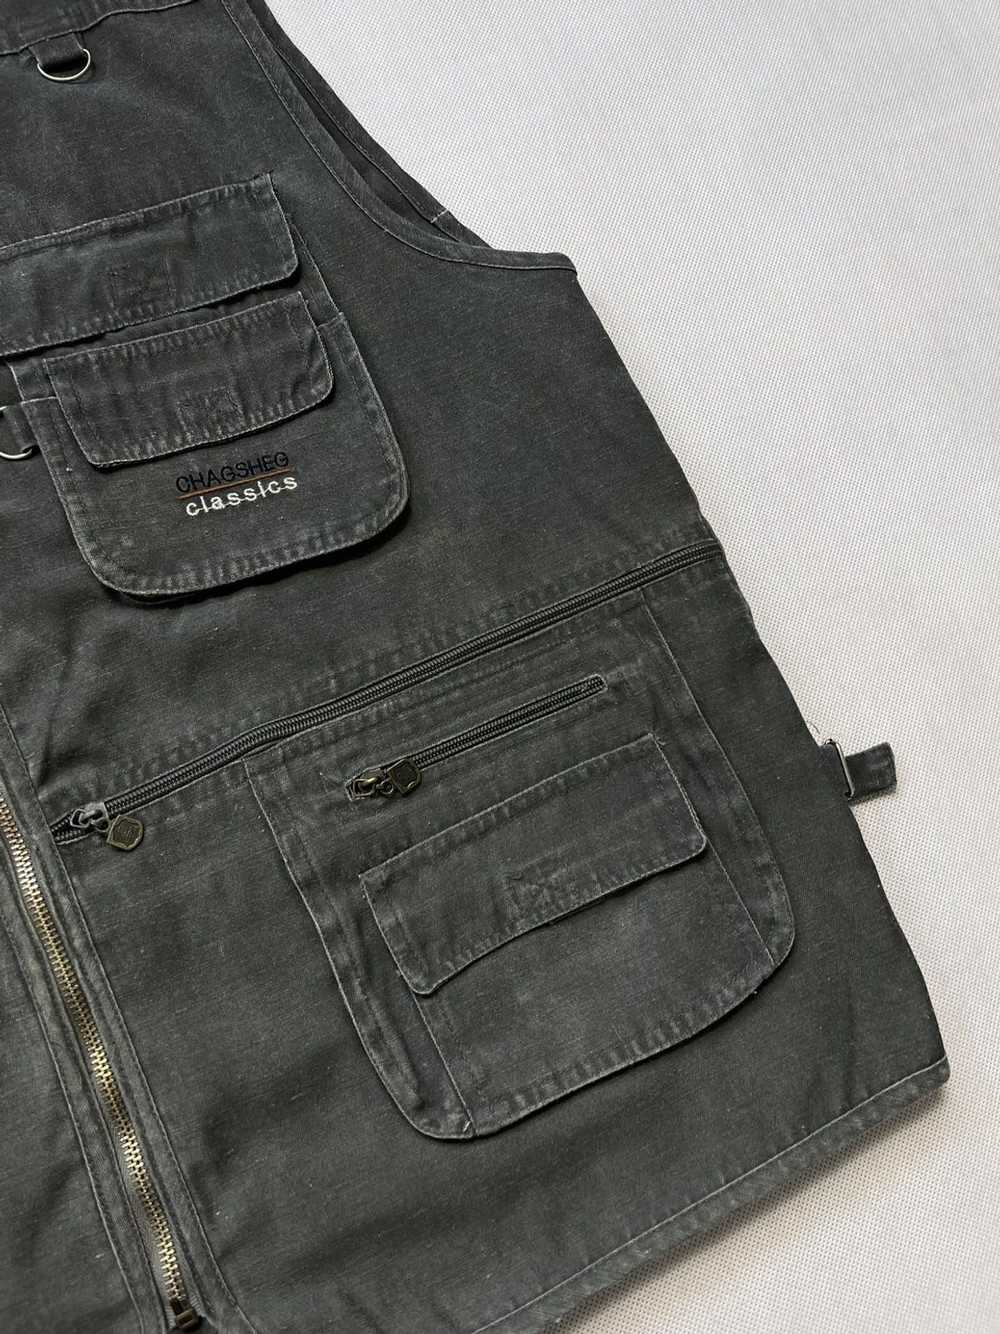 Military × Vintage Vintage vest multi pocket army… - image 2